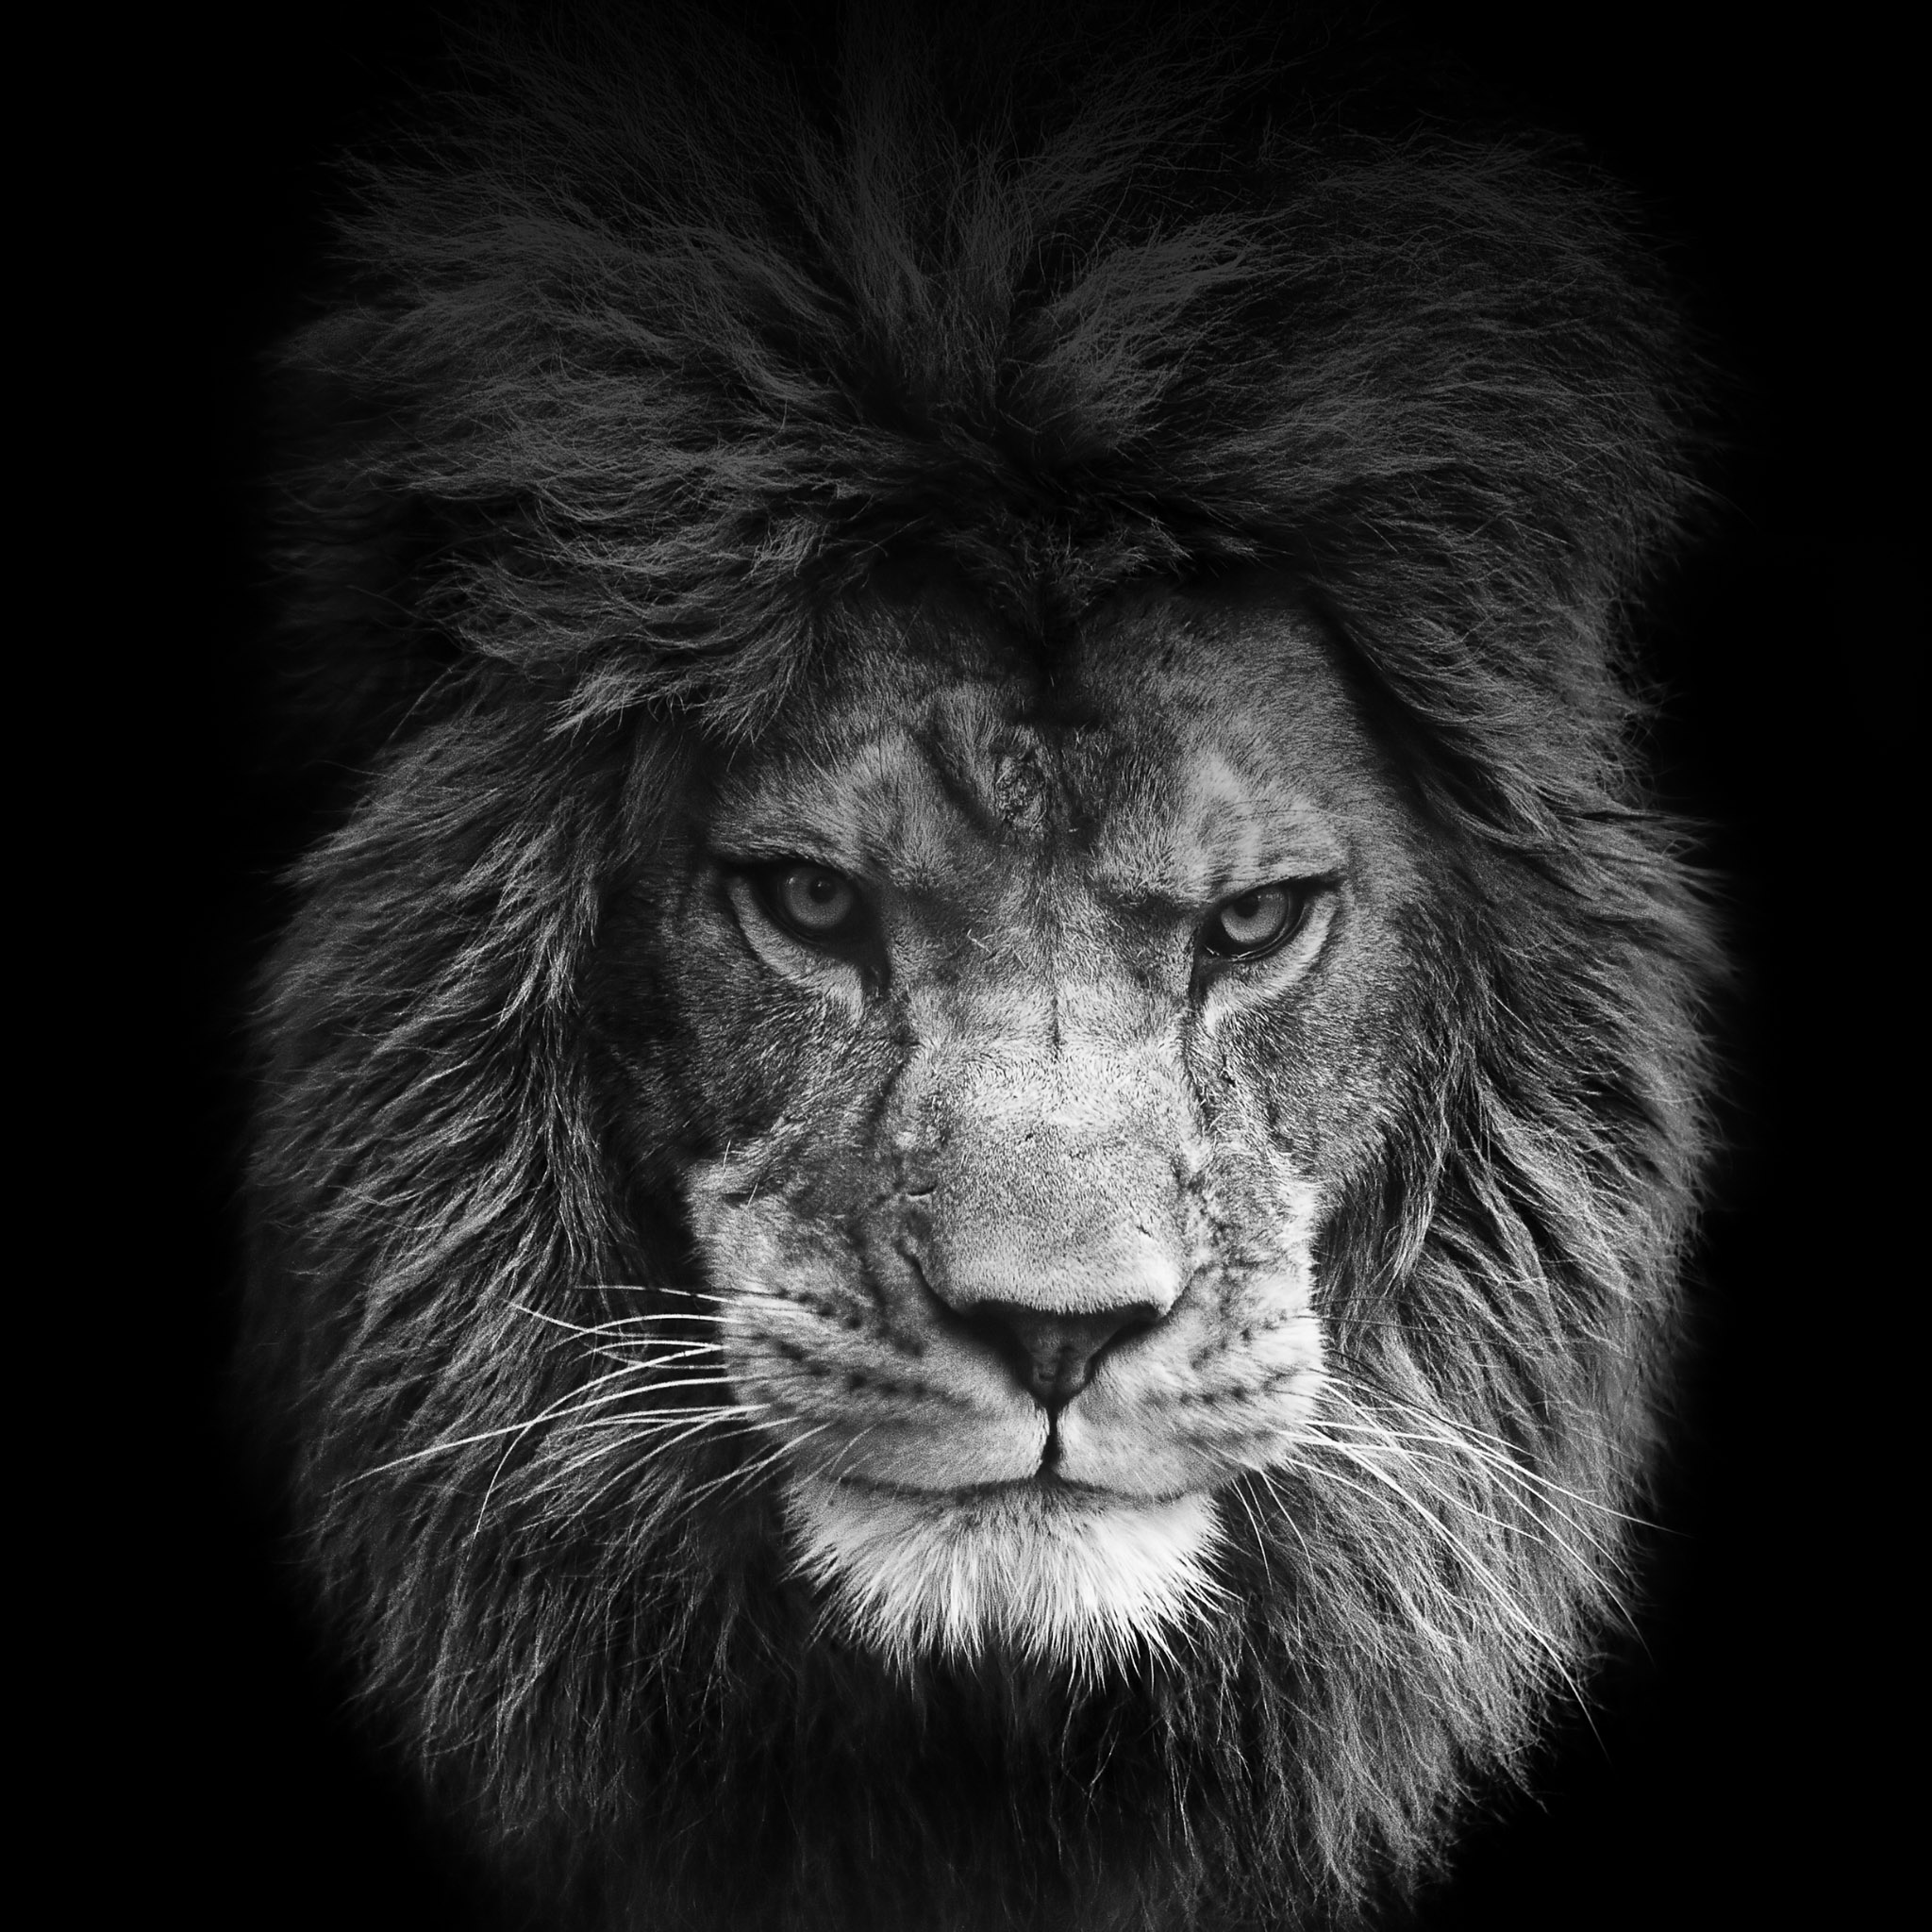 White Lion Roar Wallpaper Image Gallery